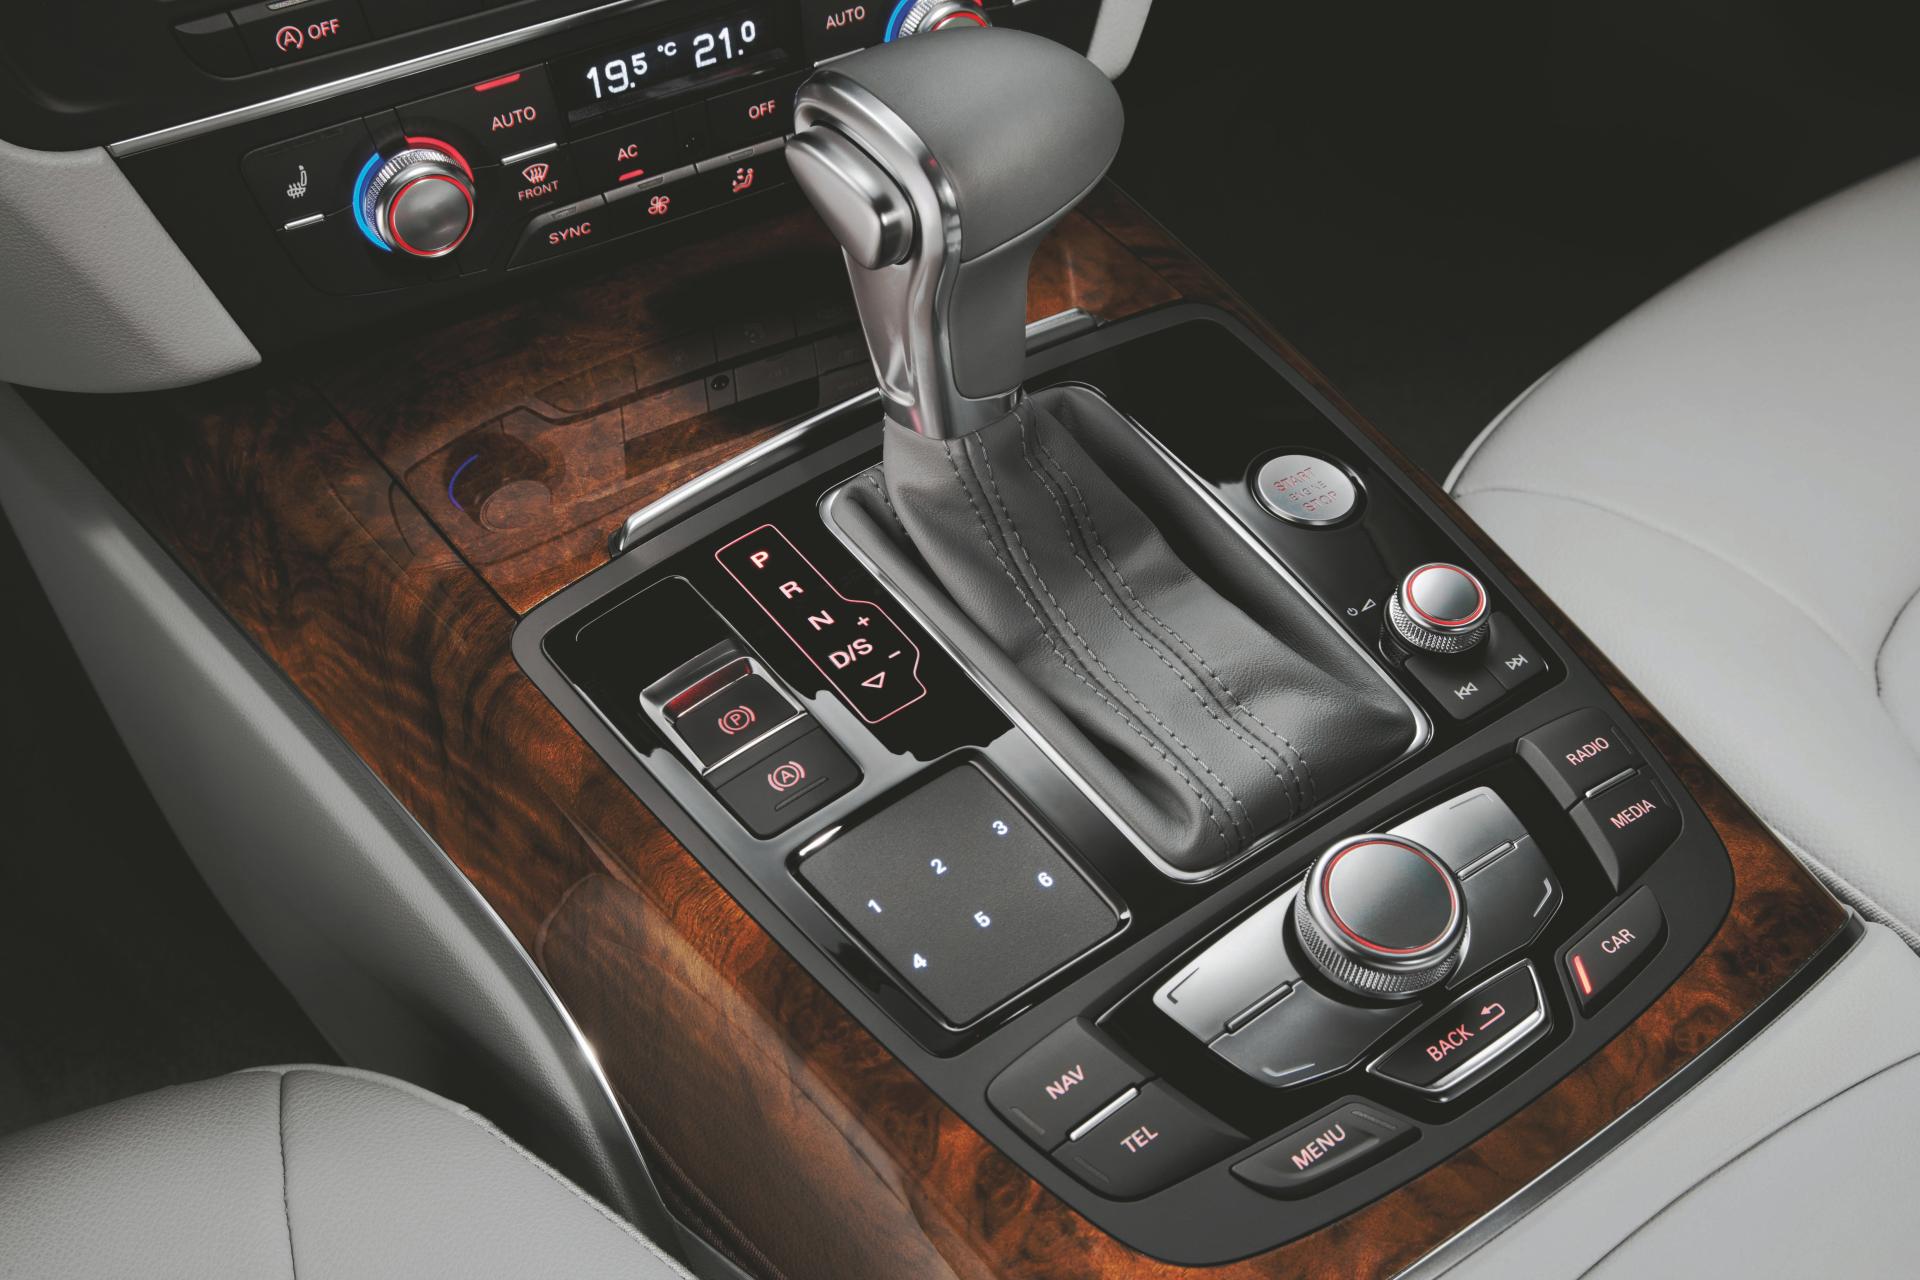 2012 Audi A6 L e-tron concept